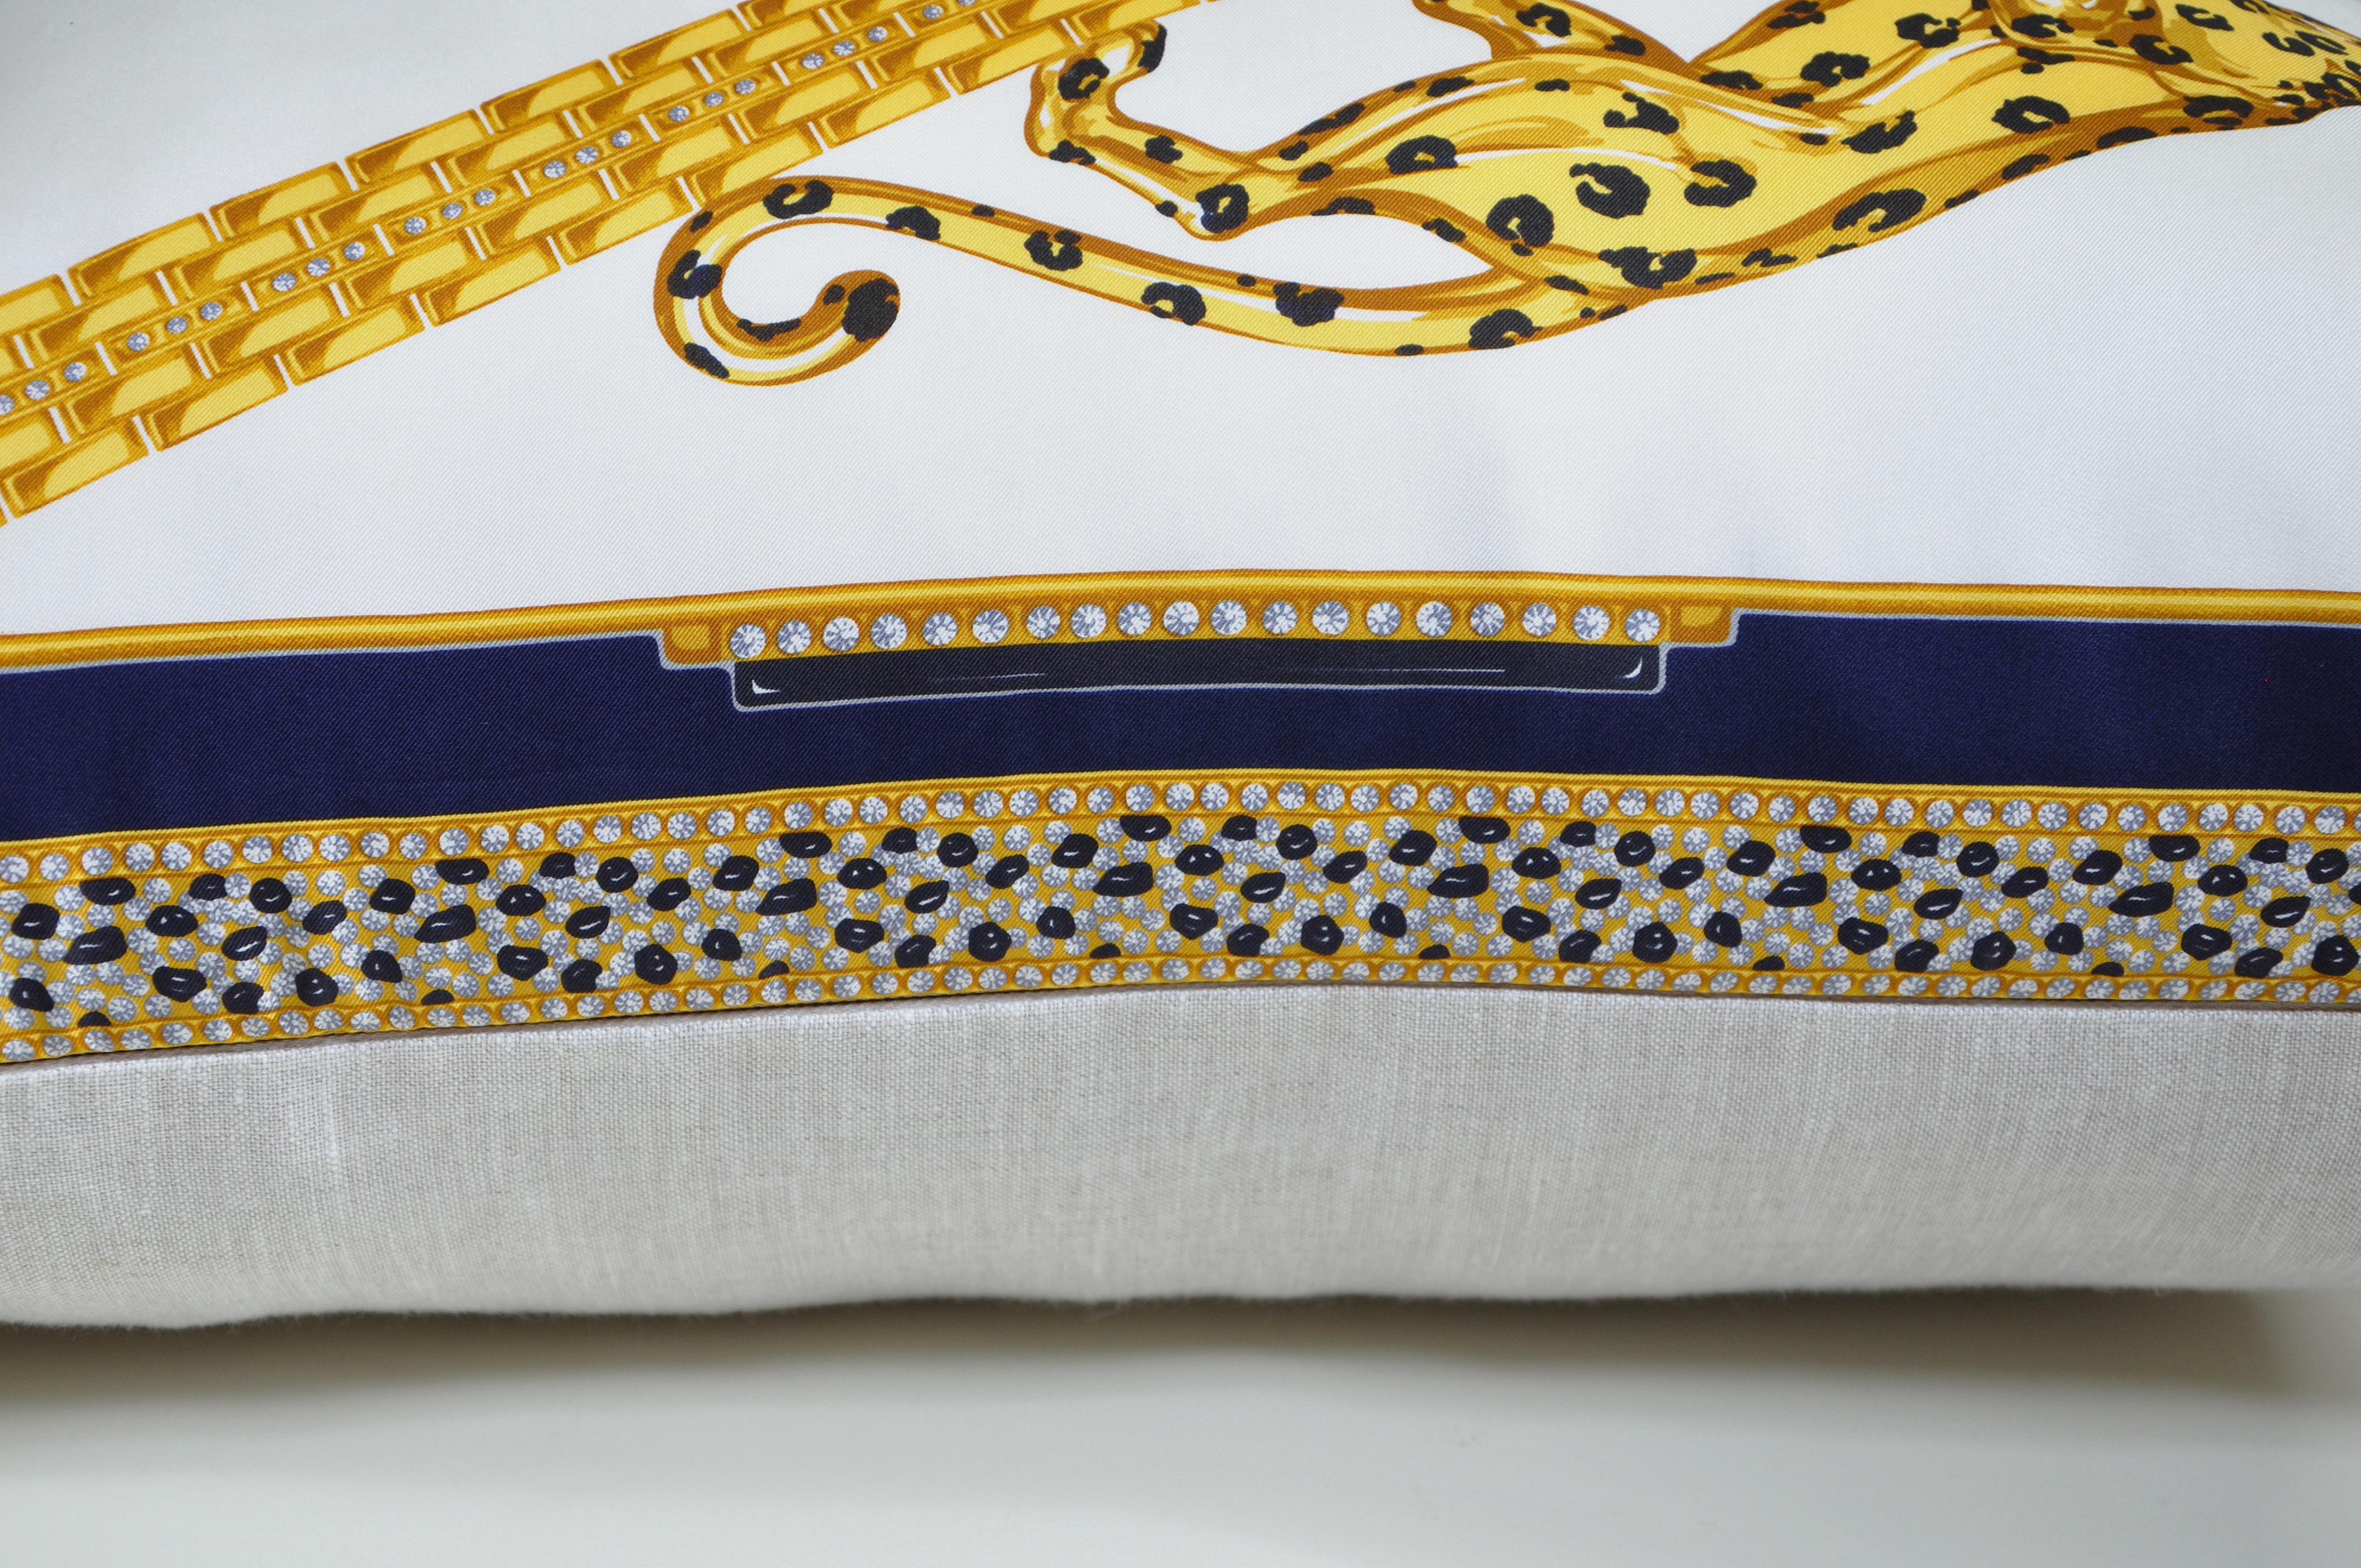 Le Studio Katie Larmour est le premier fabricant d'oreillers en forme de foulard vintage. Gagnant en notoriété pour son idée et ses créations uniques en 2013 - présentées dans des journaux comme le Financial Times, et vendues pour la première fois